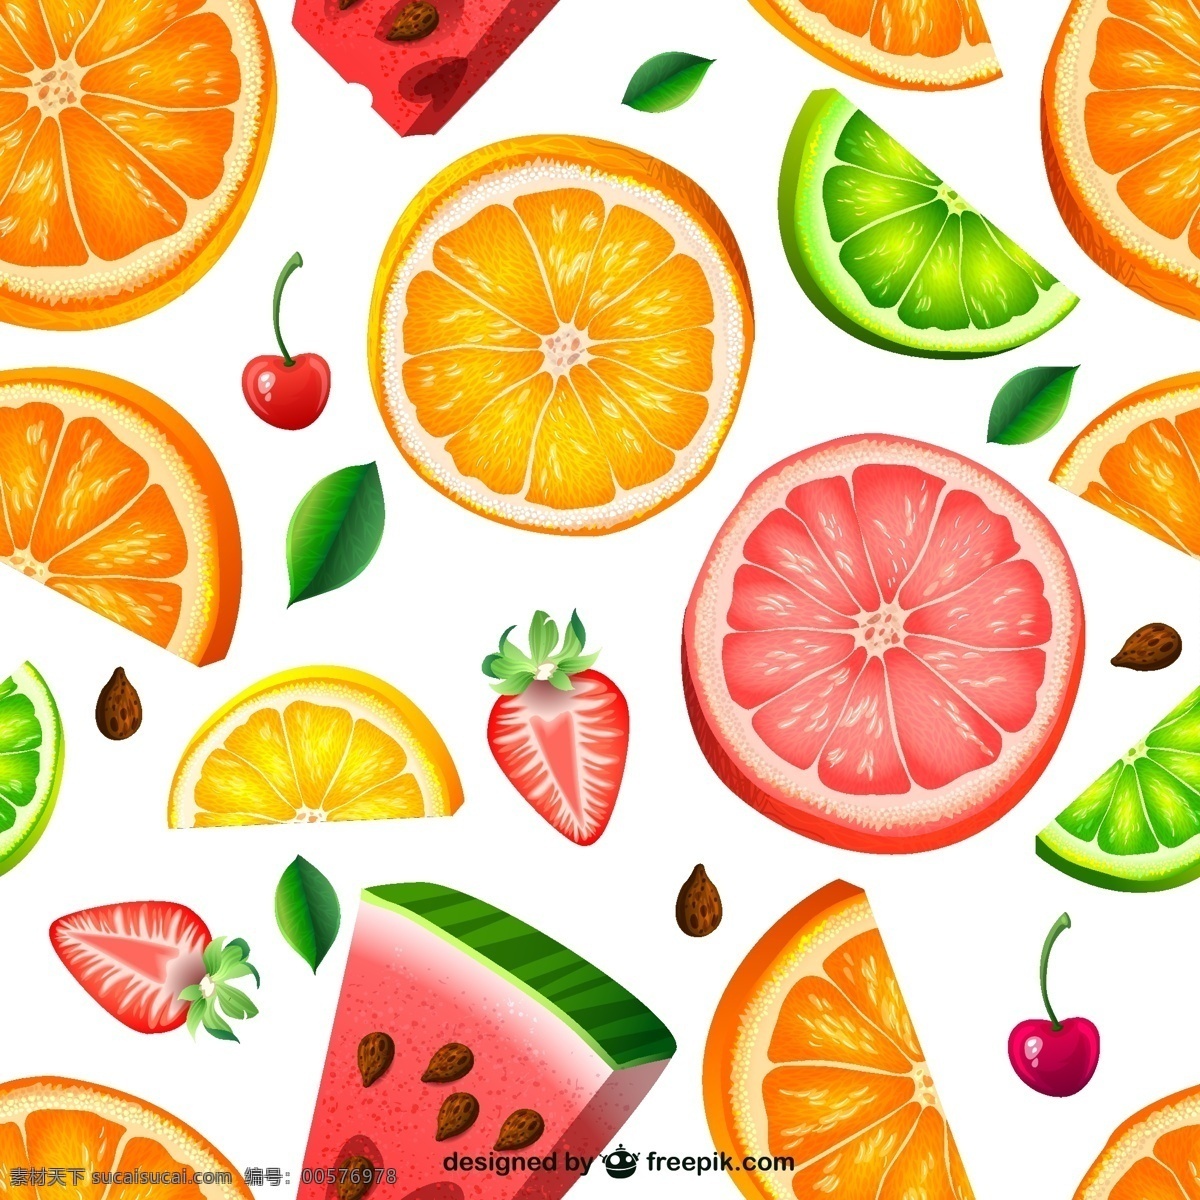 水果背景 水果 橙子 草莓 切开的草莓 切开的西瓜 西瓜 矢量西瓜 橘子 切开的橘子 矢量图片 矢量素材 其他矢量 矢量